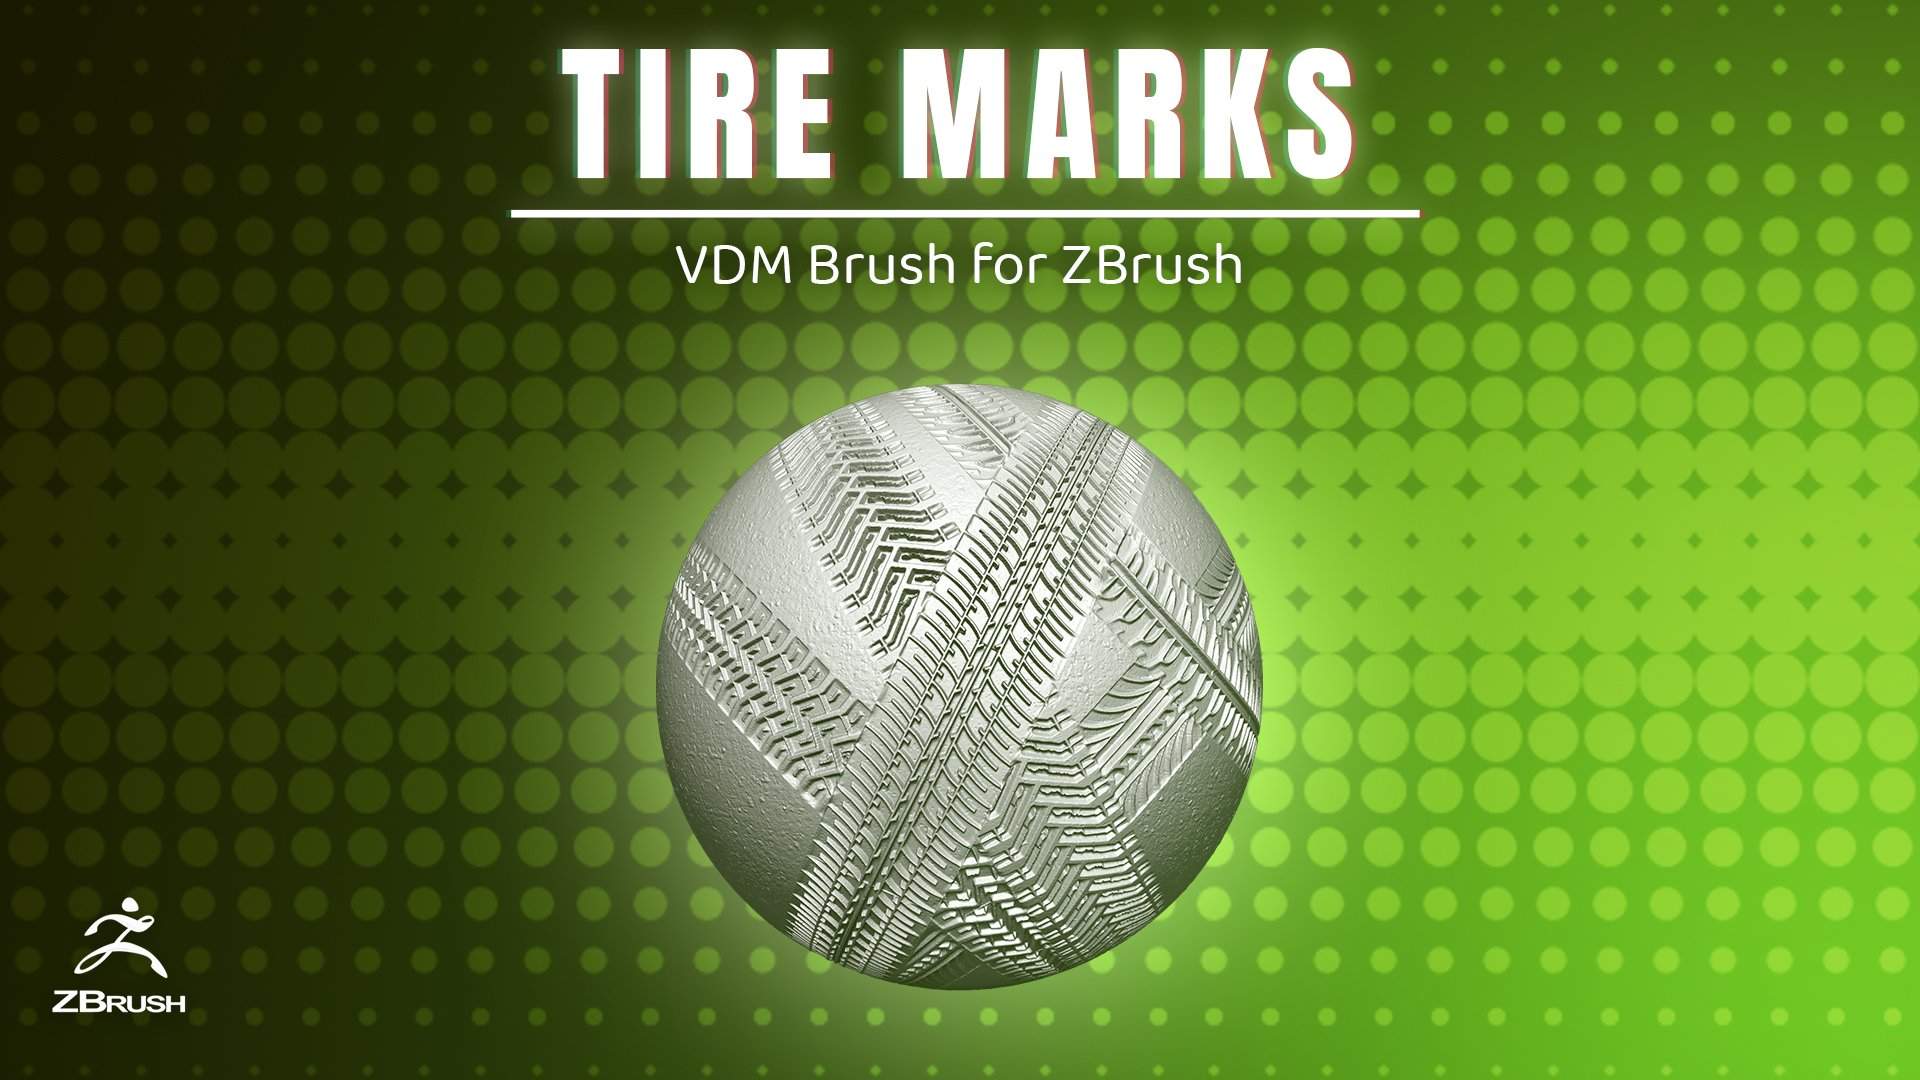 Tire Marks VDM Brush-S3ART Store